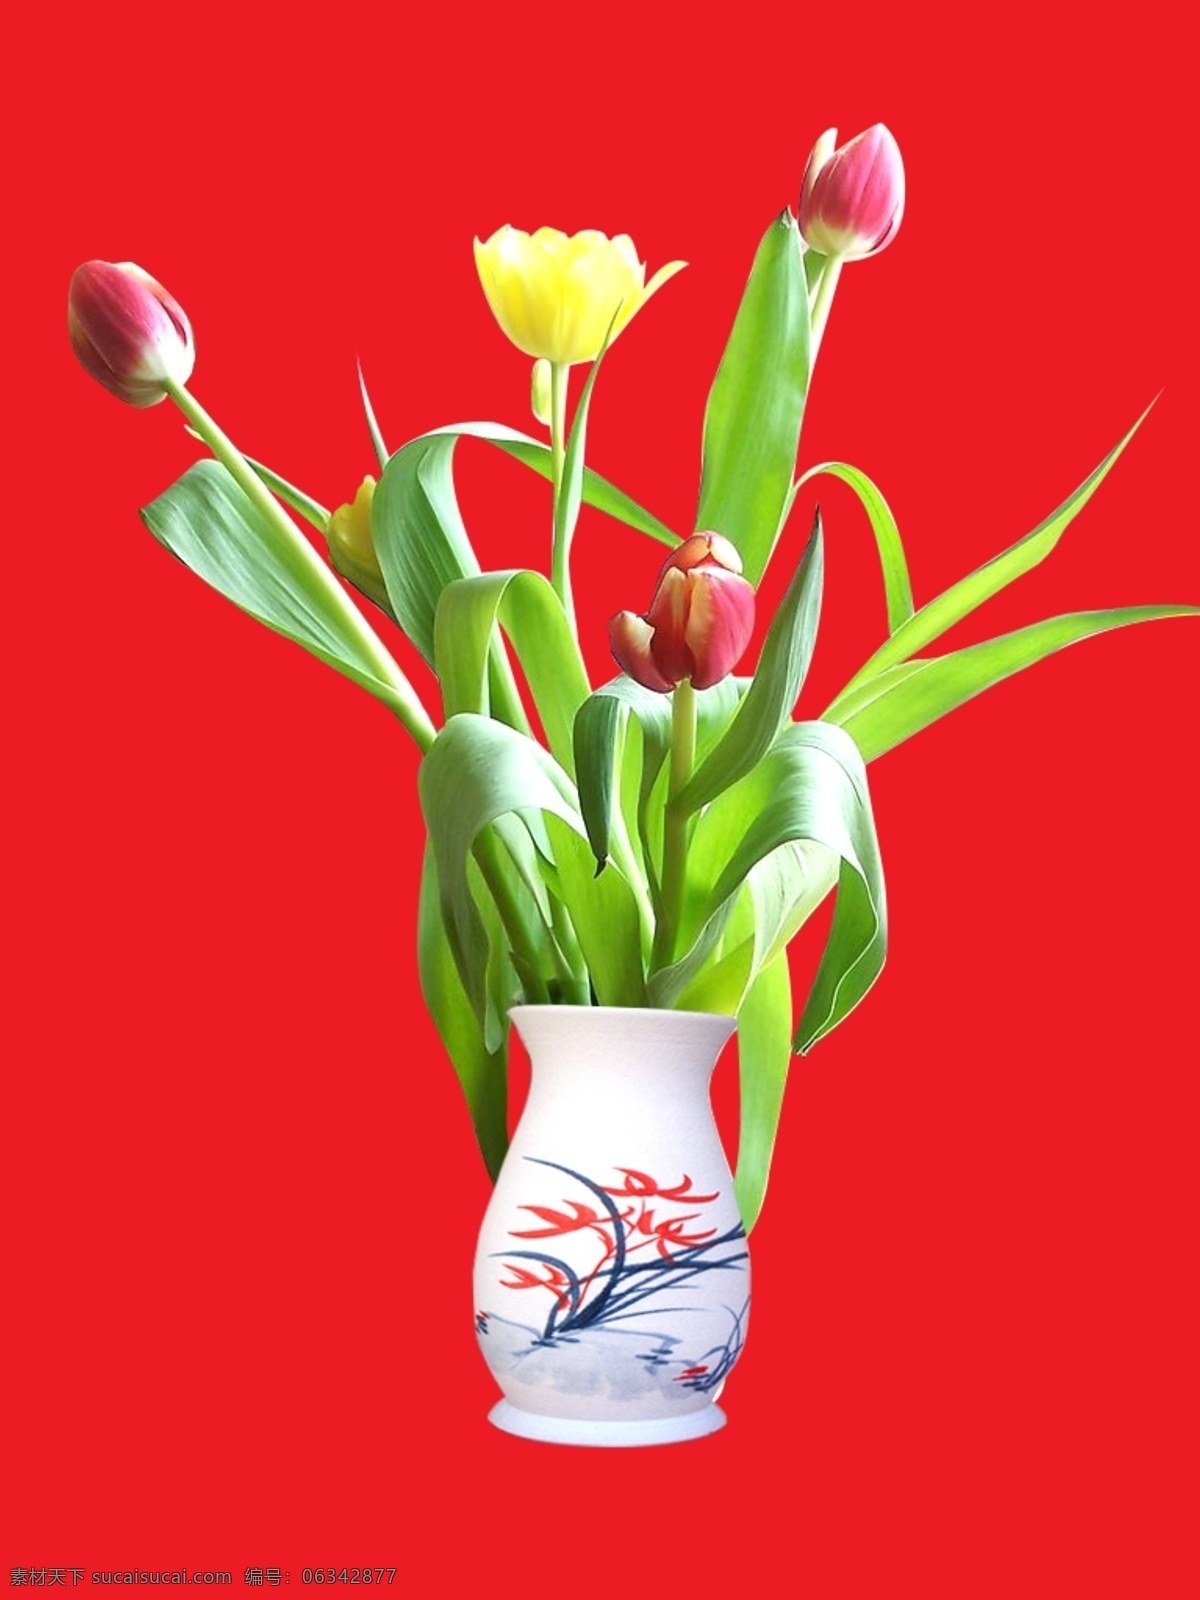 花瓶花 花瓶 鲜花 绿色的叶子 带花纹的花瓶 宣传 国内广告设计 广告设计模板 源文件